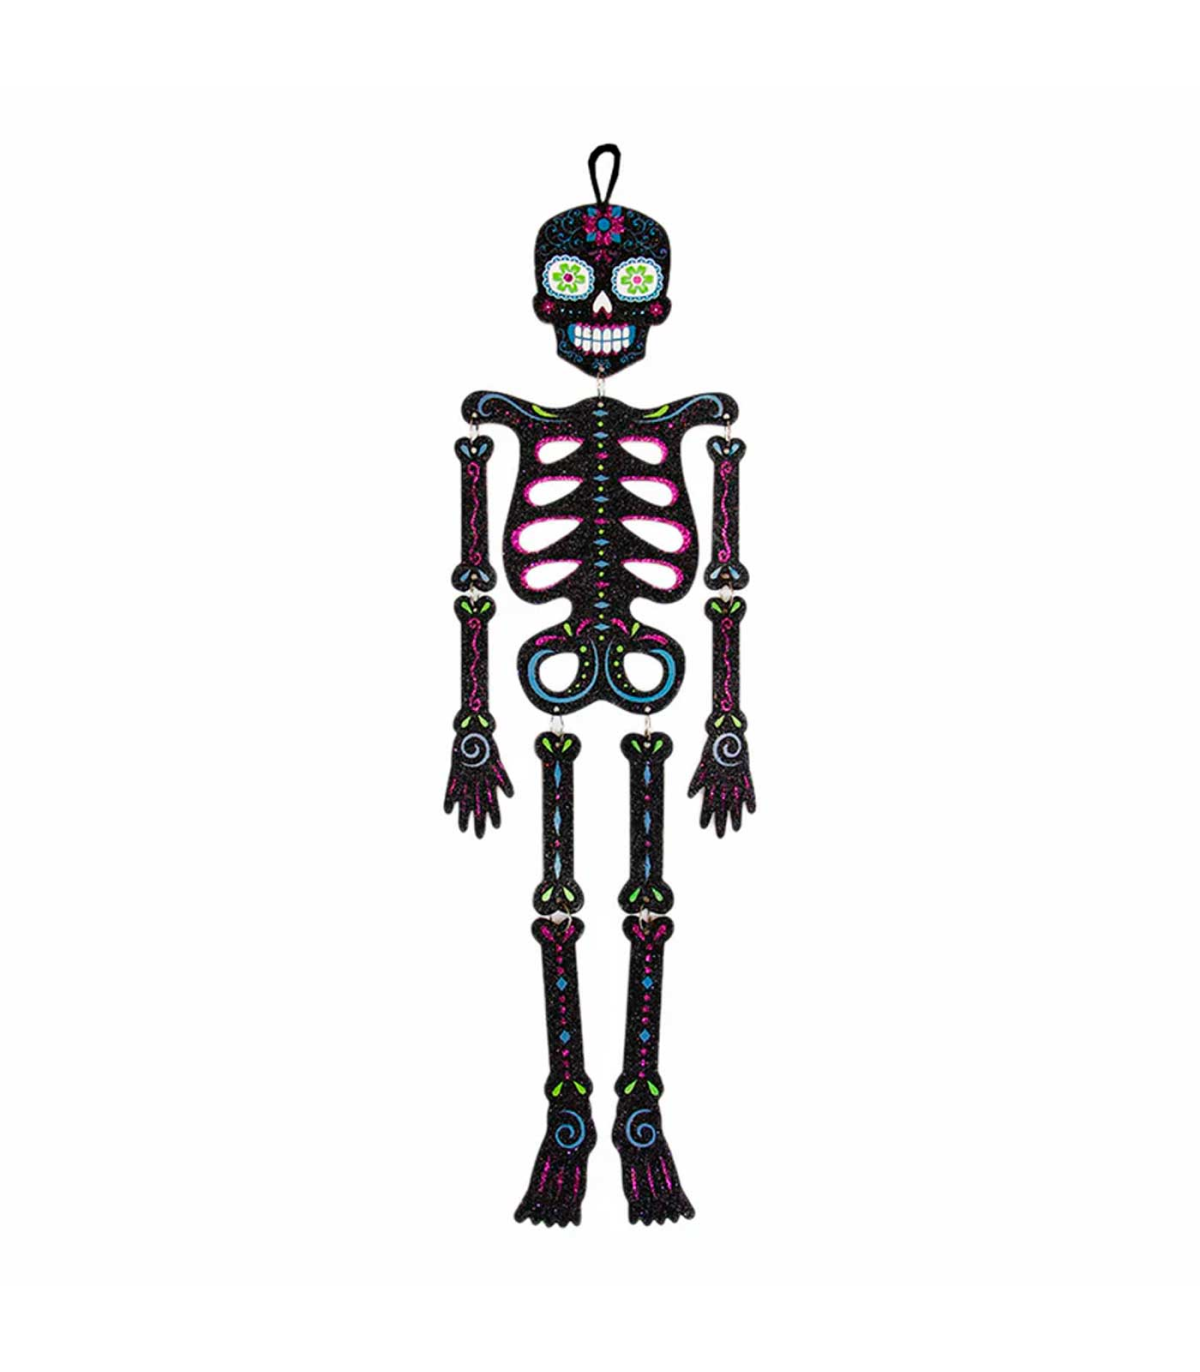 Subordinar Mareo Grave Tradineur - Esqueleto colgante con diseño mexicano para Halloween -  Fabricado en plástico - Adorno para decoración - Longitud 66